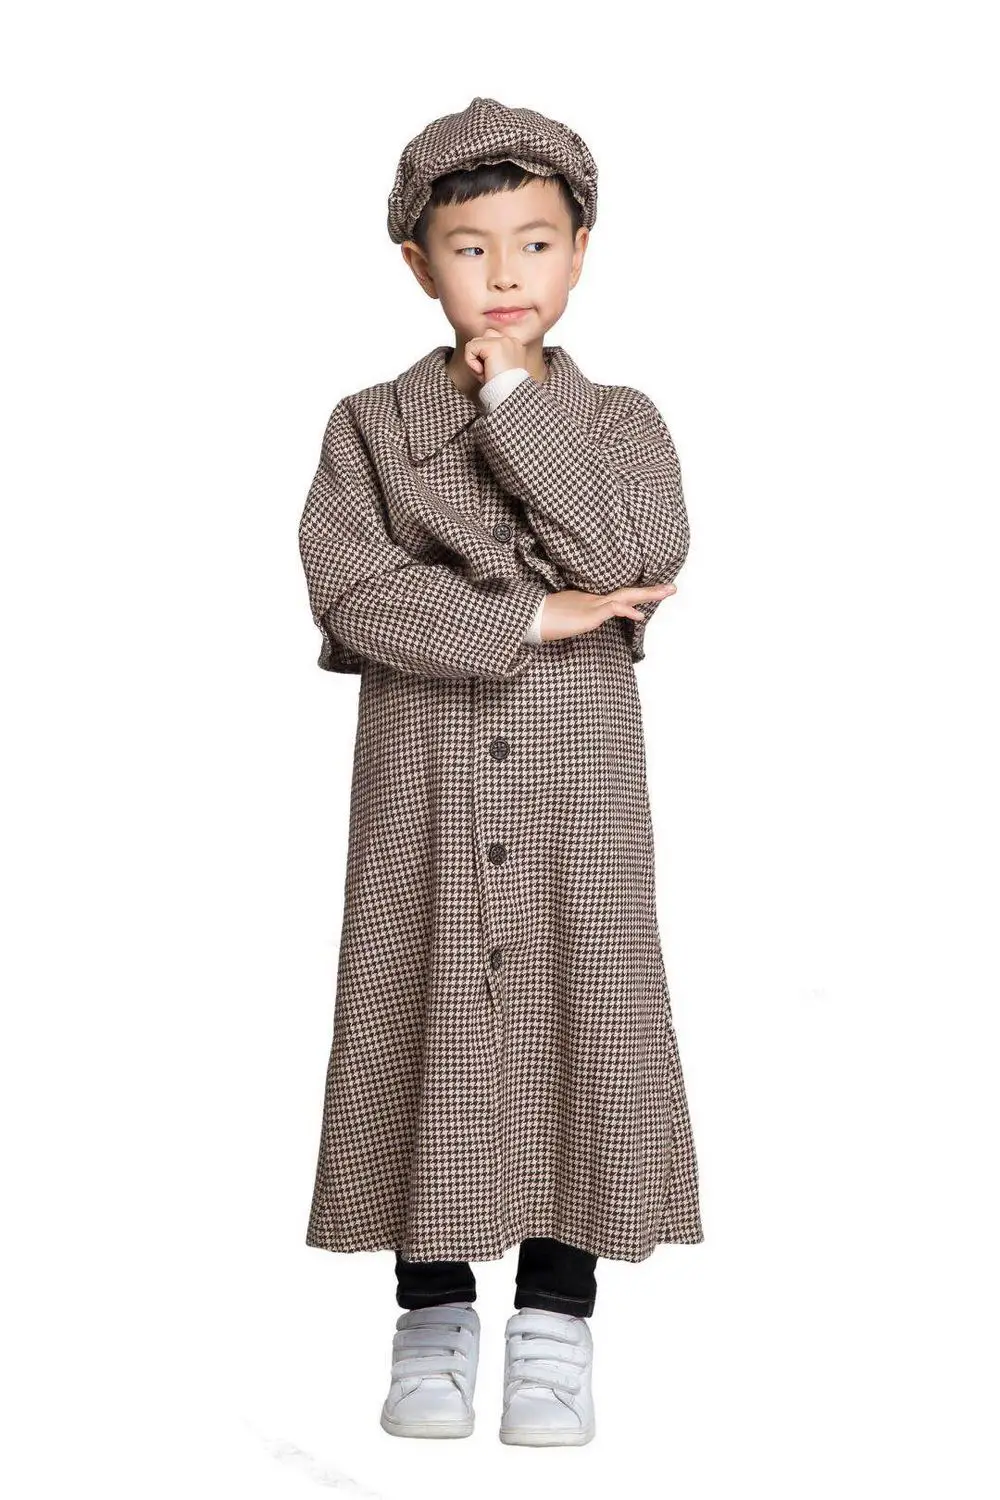 Костюм Шерлока Холмса, пальто, шляпа, нарядное платье для детектива мира, книга, день, костюм для мальчиков, костюм для родителей и ребенка, костюм унисекс для костюмированной вечеринки на Хэллоуин